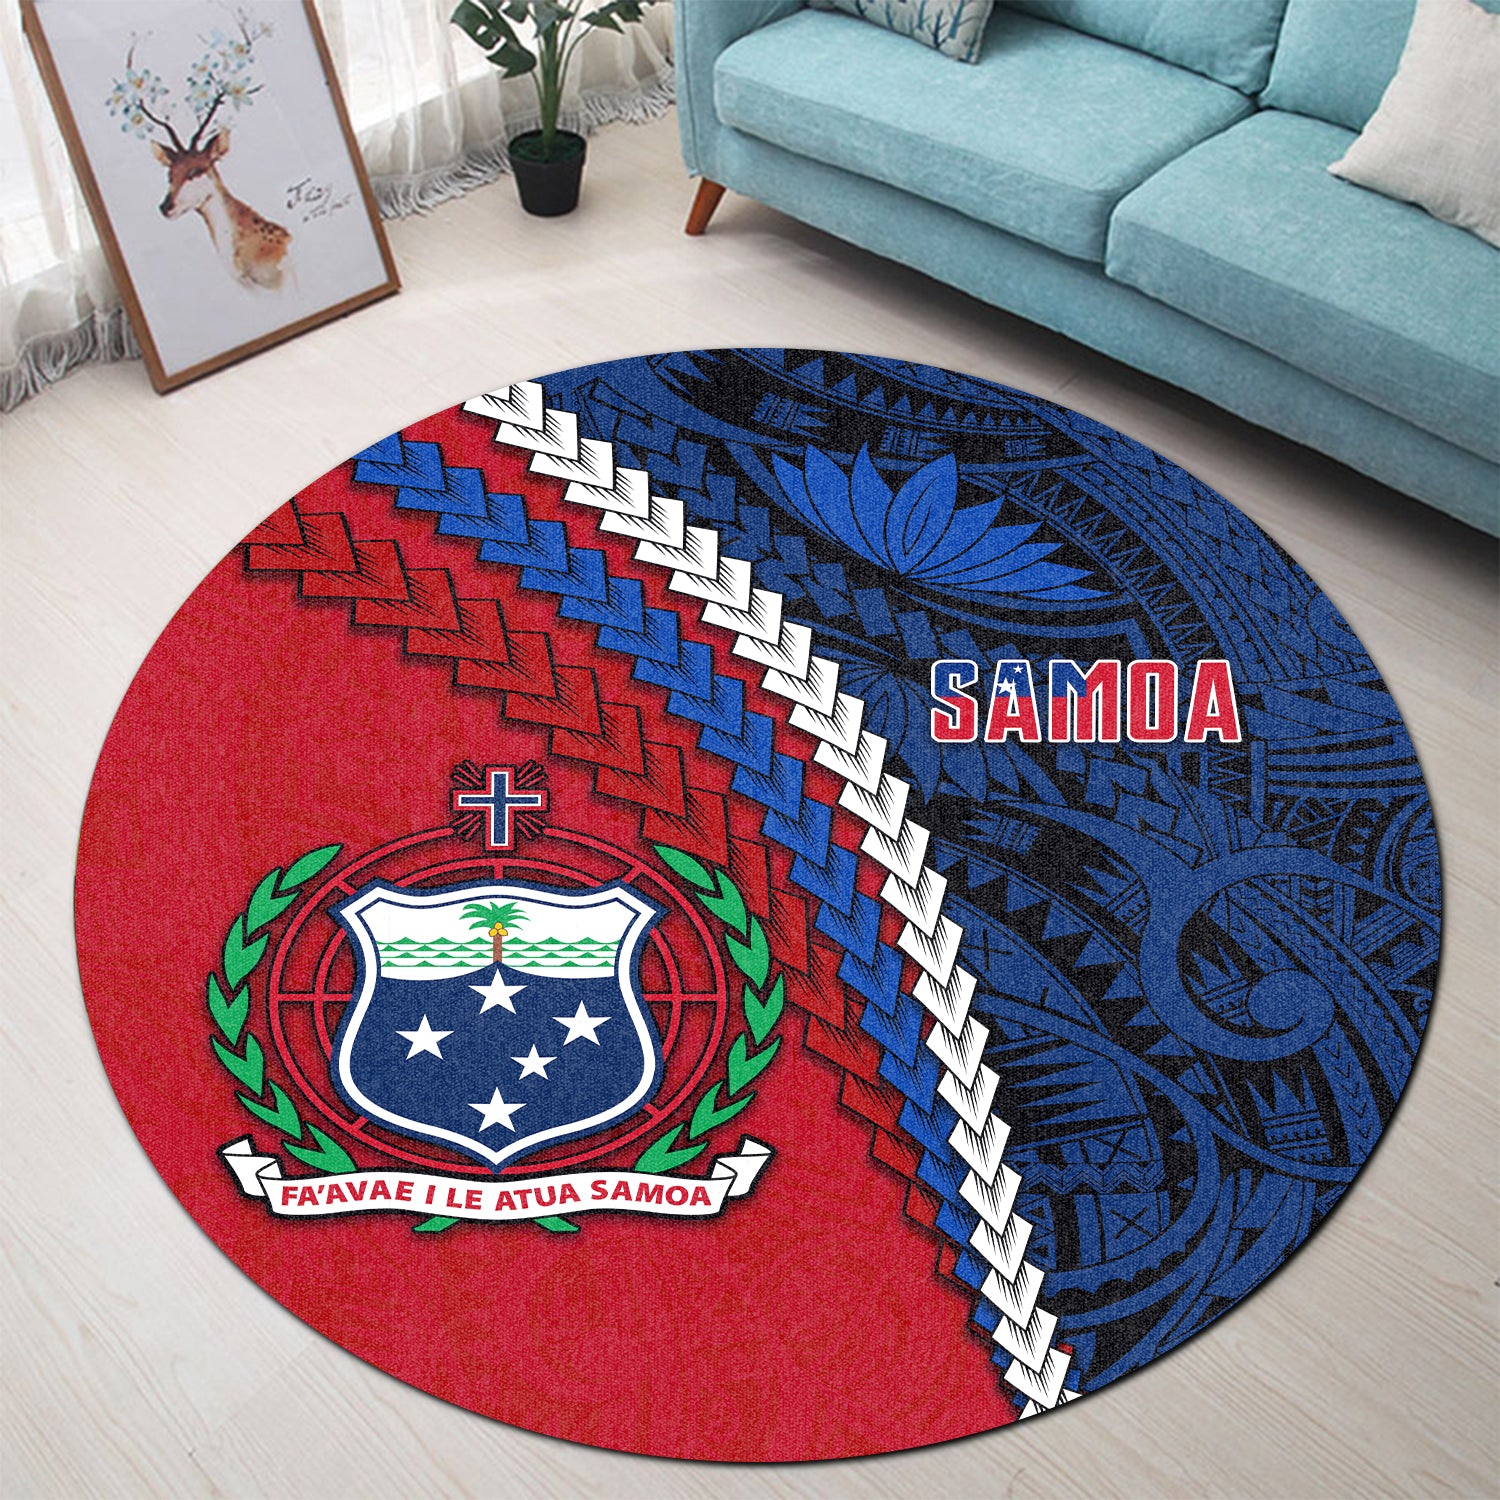 Samoa Polynesian Round Carpet Quotes LT13 Round Carpet Red - Polynesian Pride